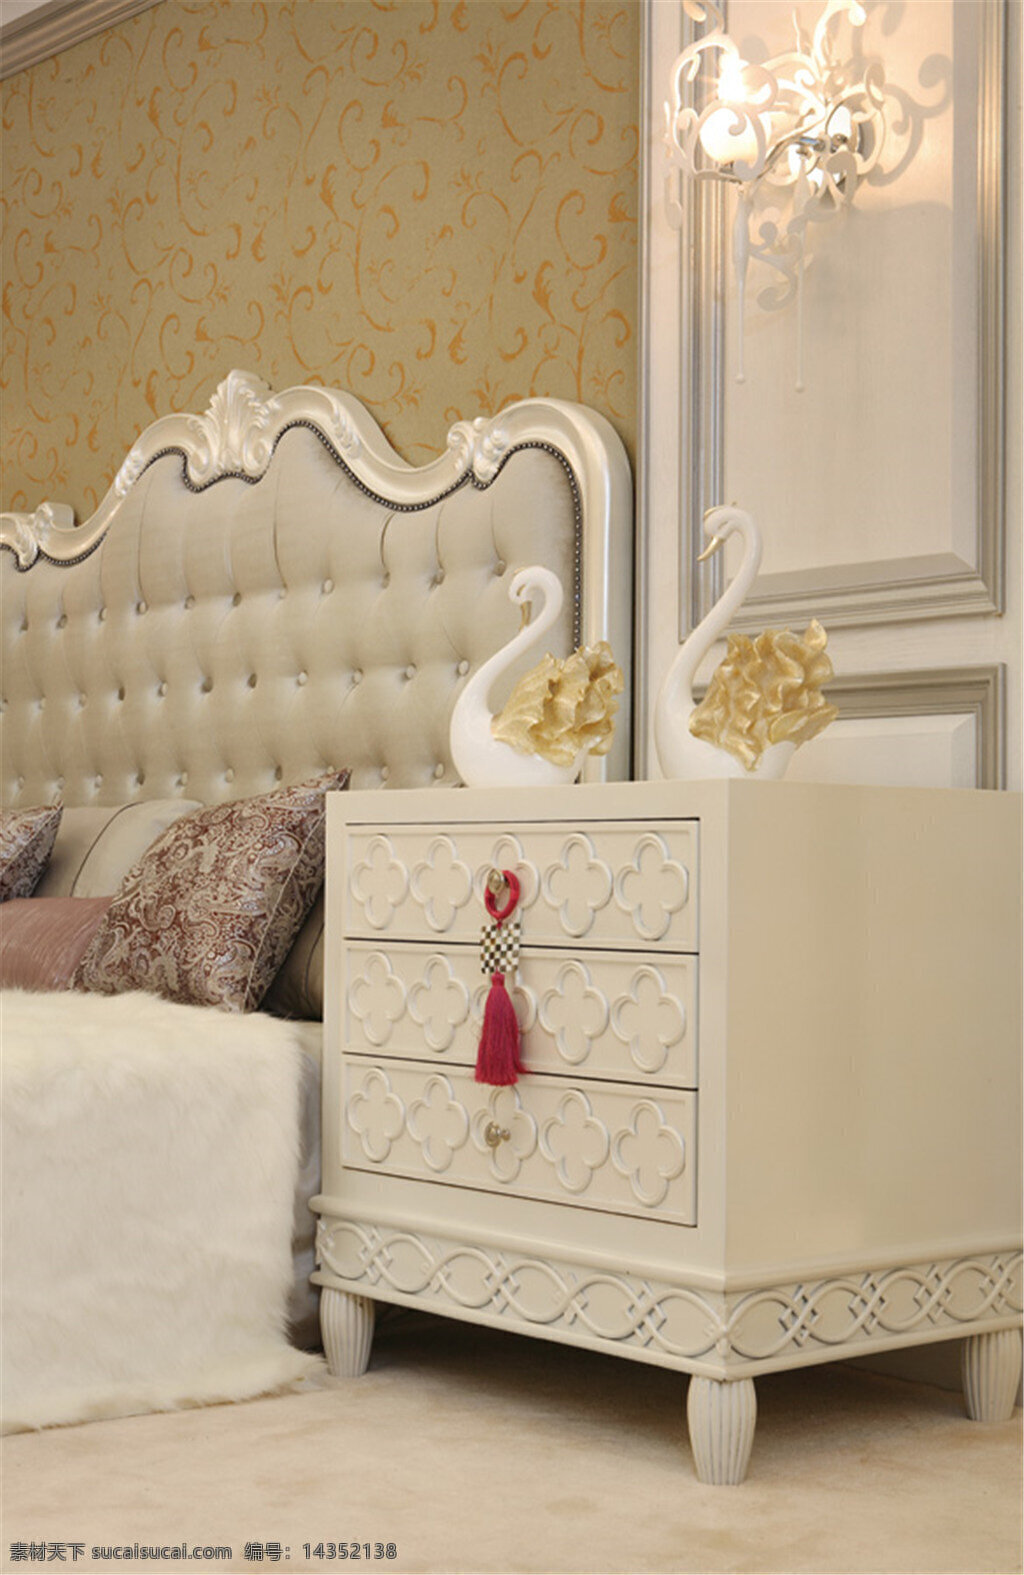 现代 时尚 卧室 黄色 花纹 背景 墙 室内装修 效果图 卧室装修 白色床头柜 天鹅装饰 深色抱枕